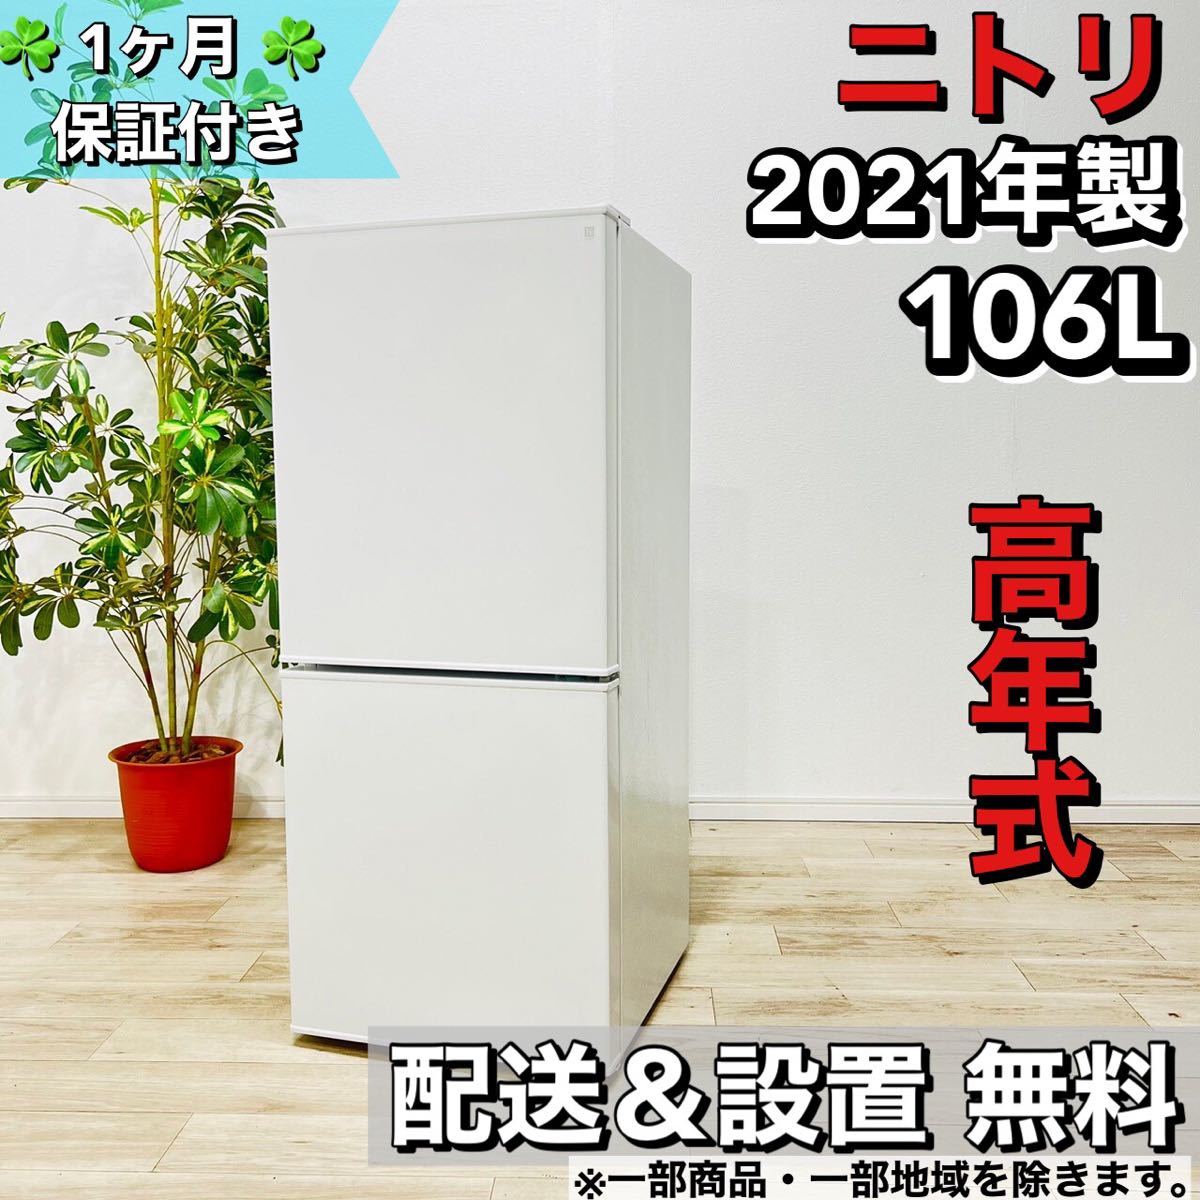 ニトリ 冷蔵庫 106L 2021年 a1228 6,-